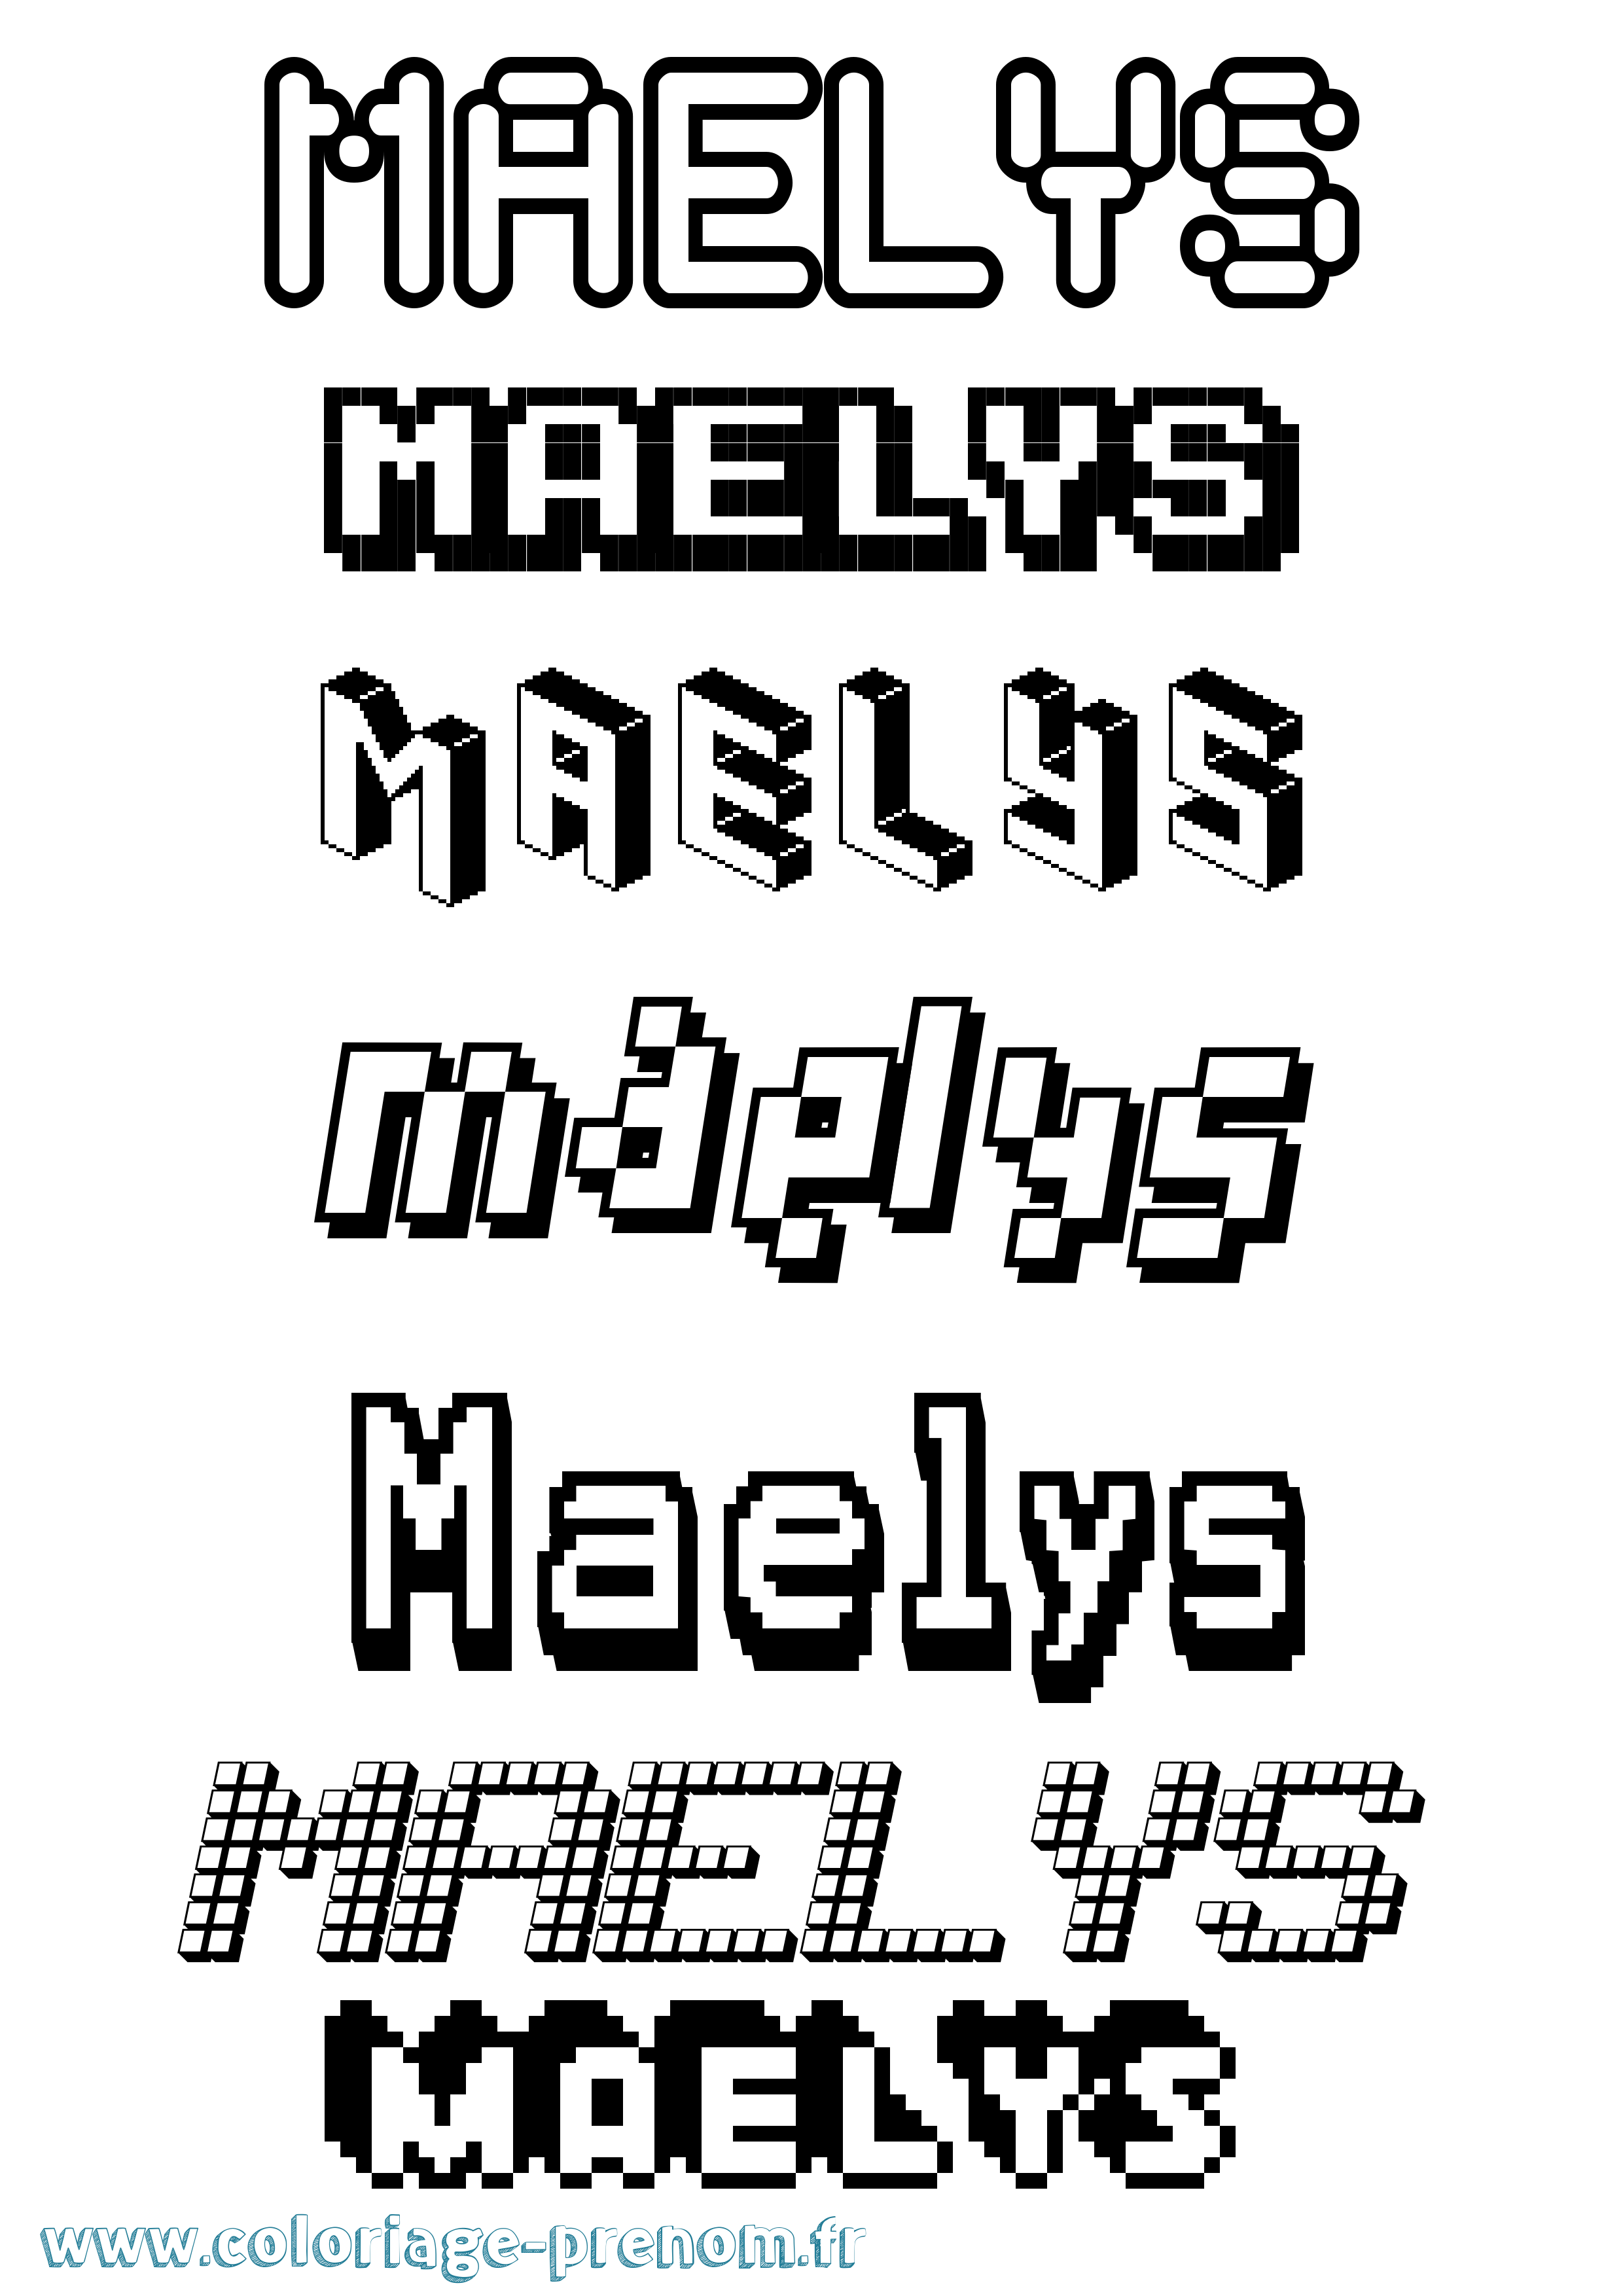 Coloriage prénom Maelys Pixel